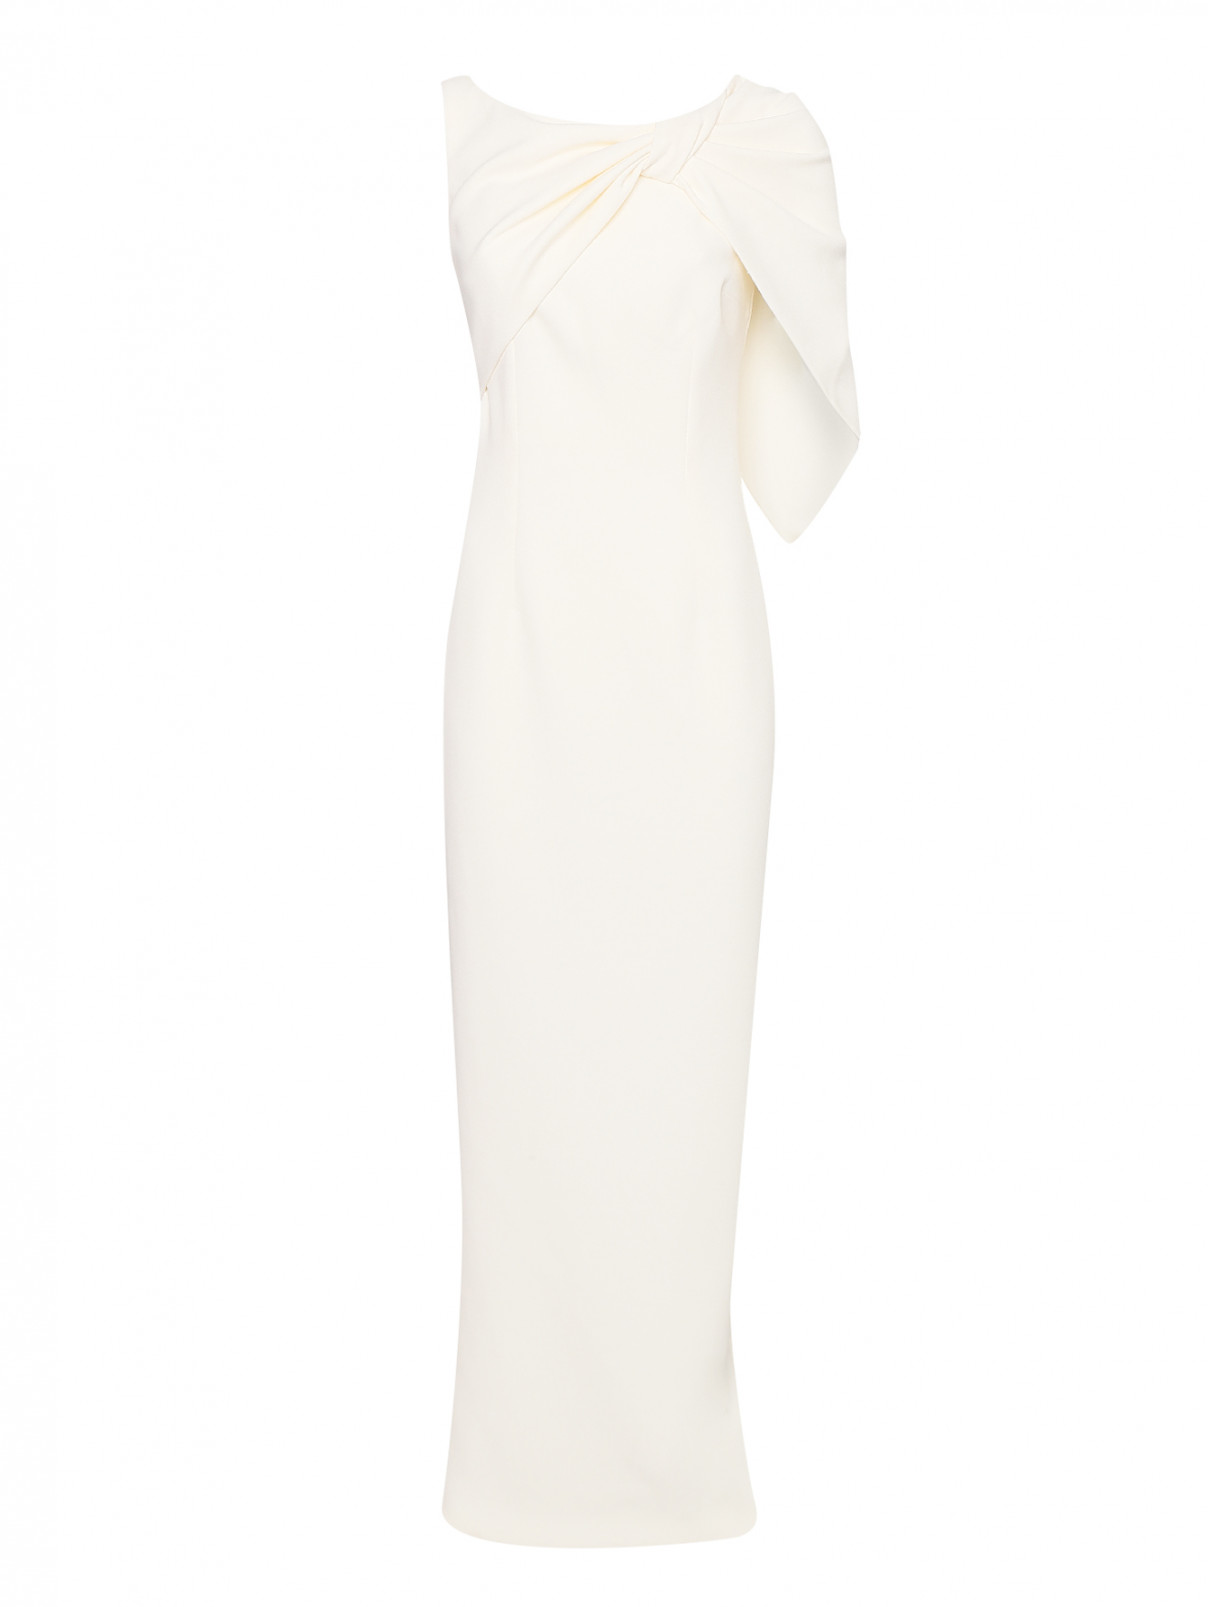 платье макси приталенное, с декором на груди Safiyaa  –  Общий вид  – Цвет:  Белый